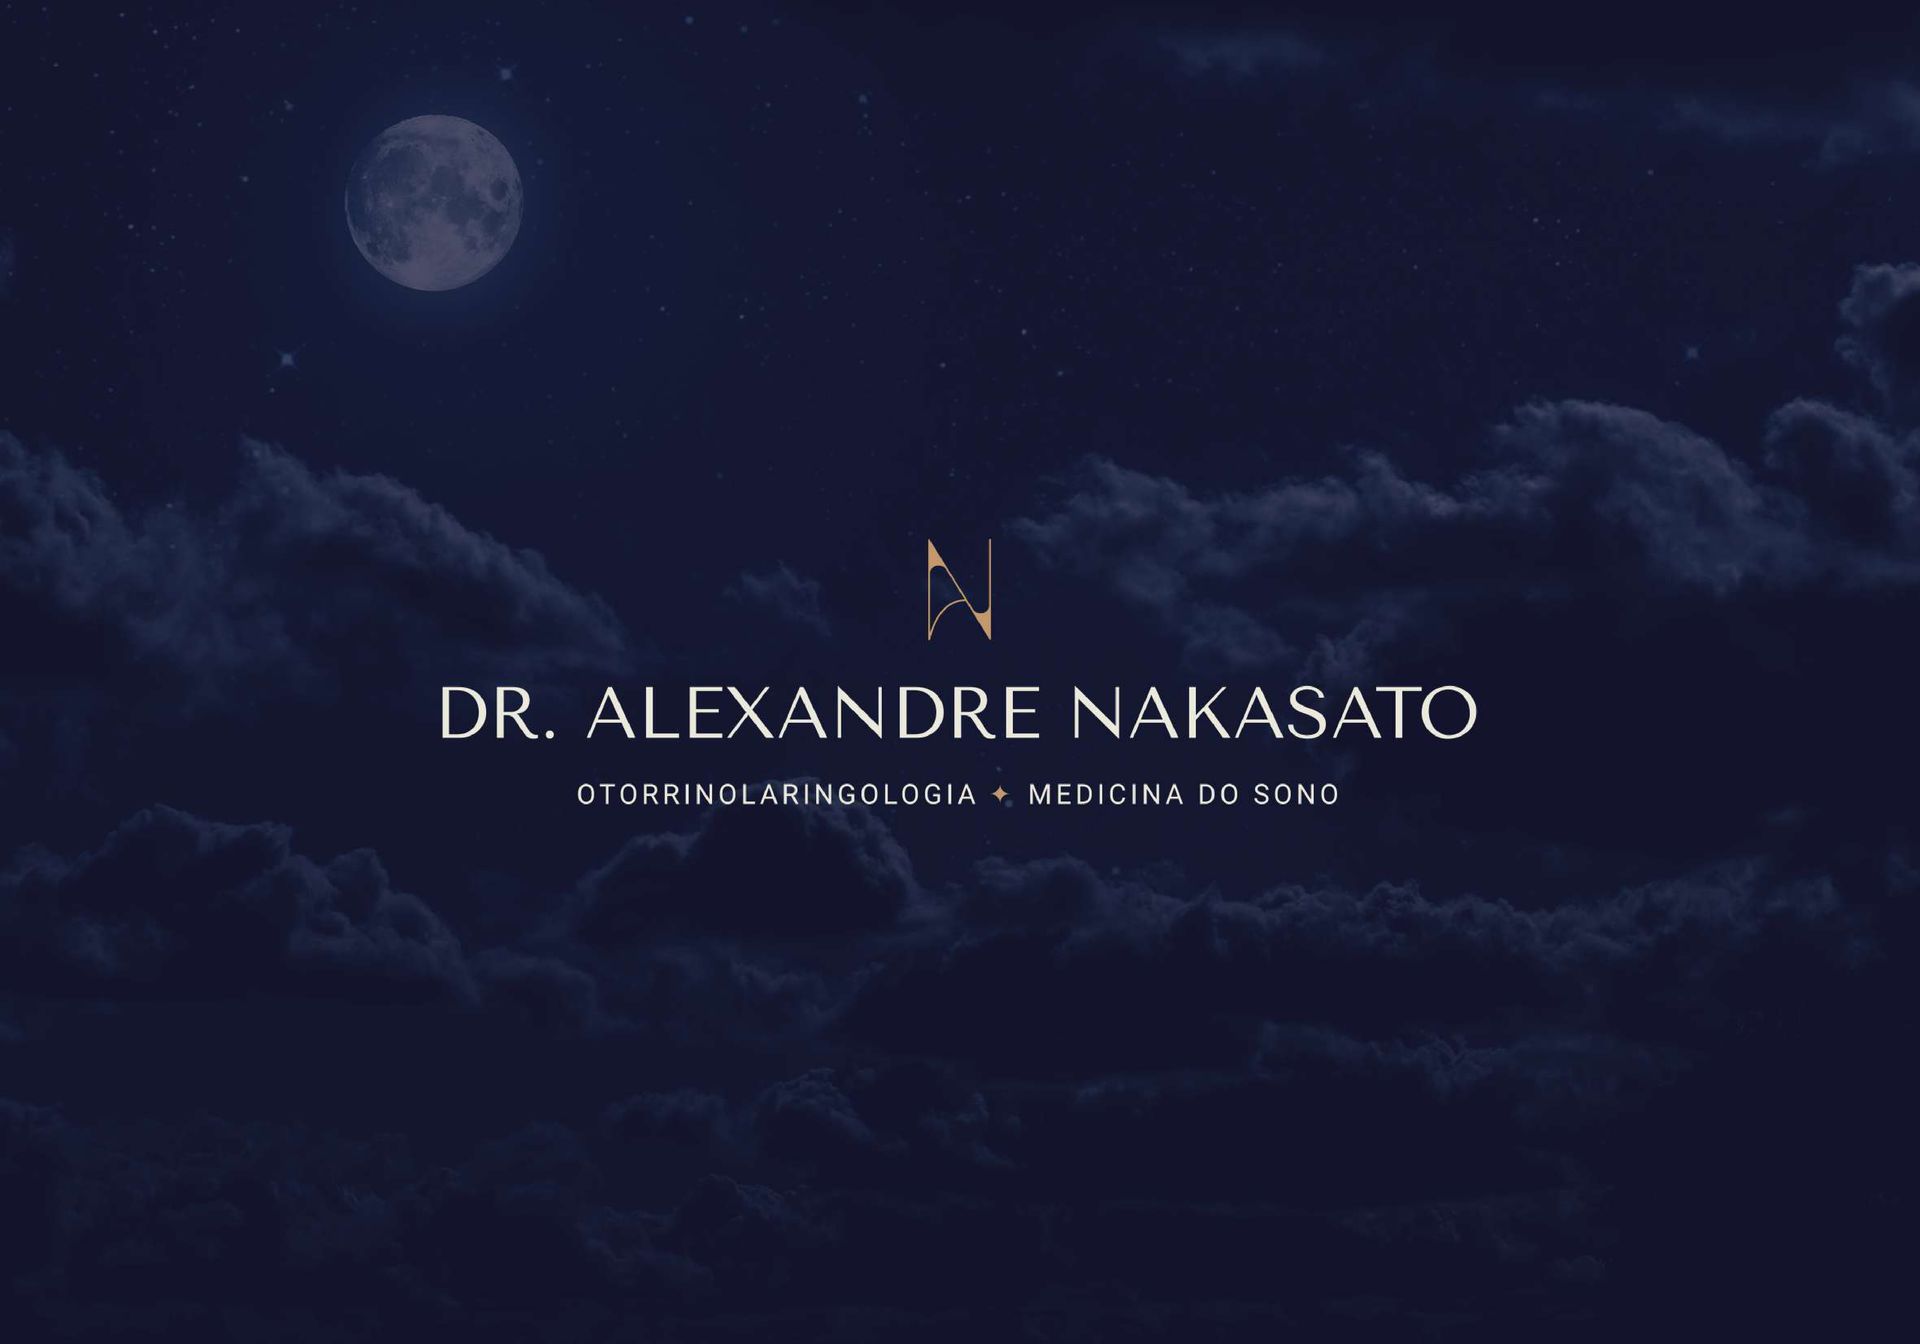 Alexandre Nakasato